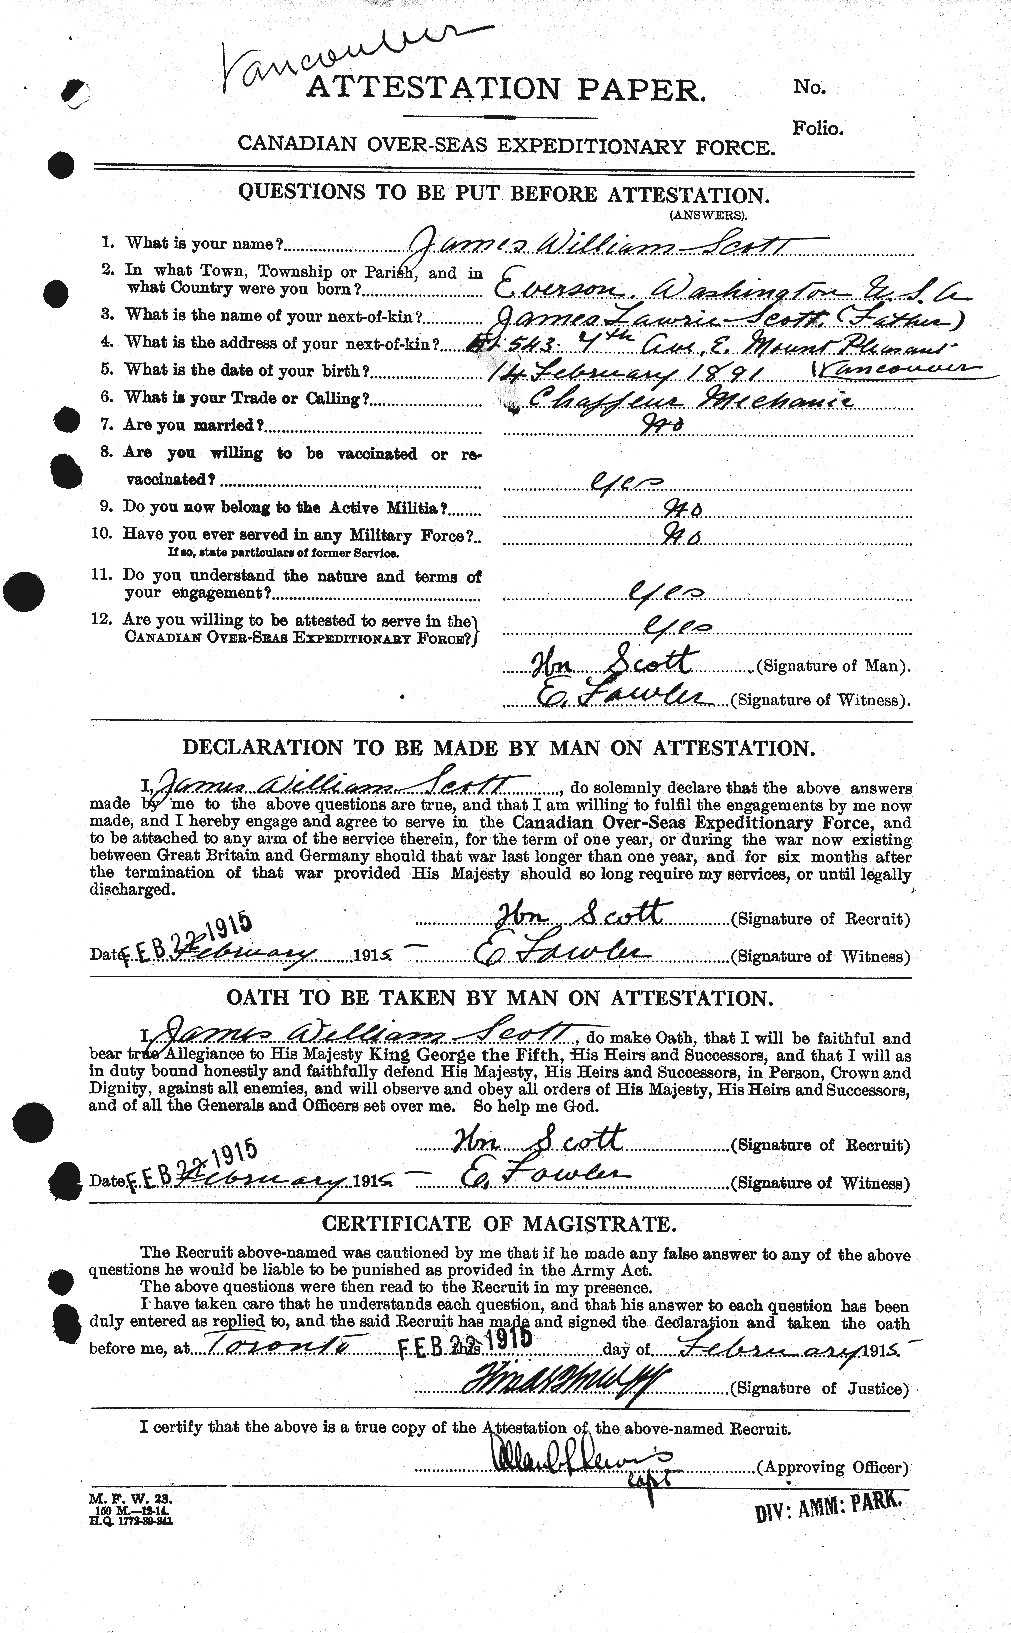 Dossiers du Personnel de la Première Guerre mondiale - CEC 085168a